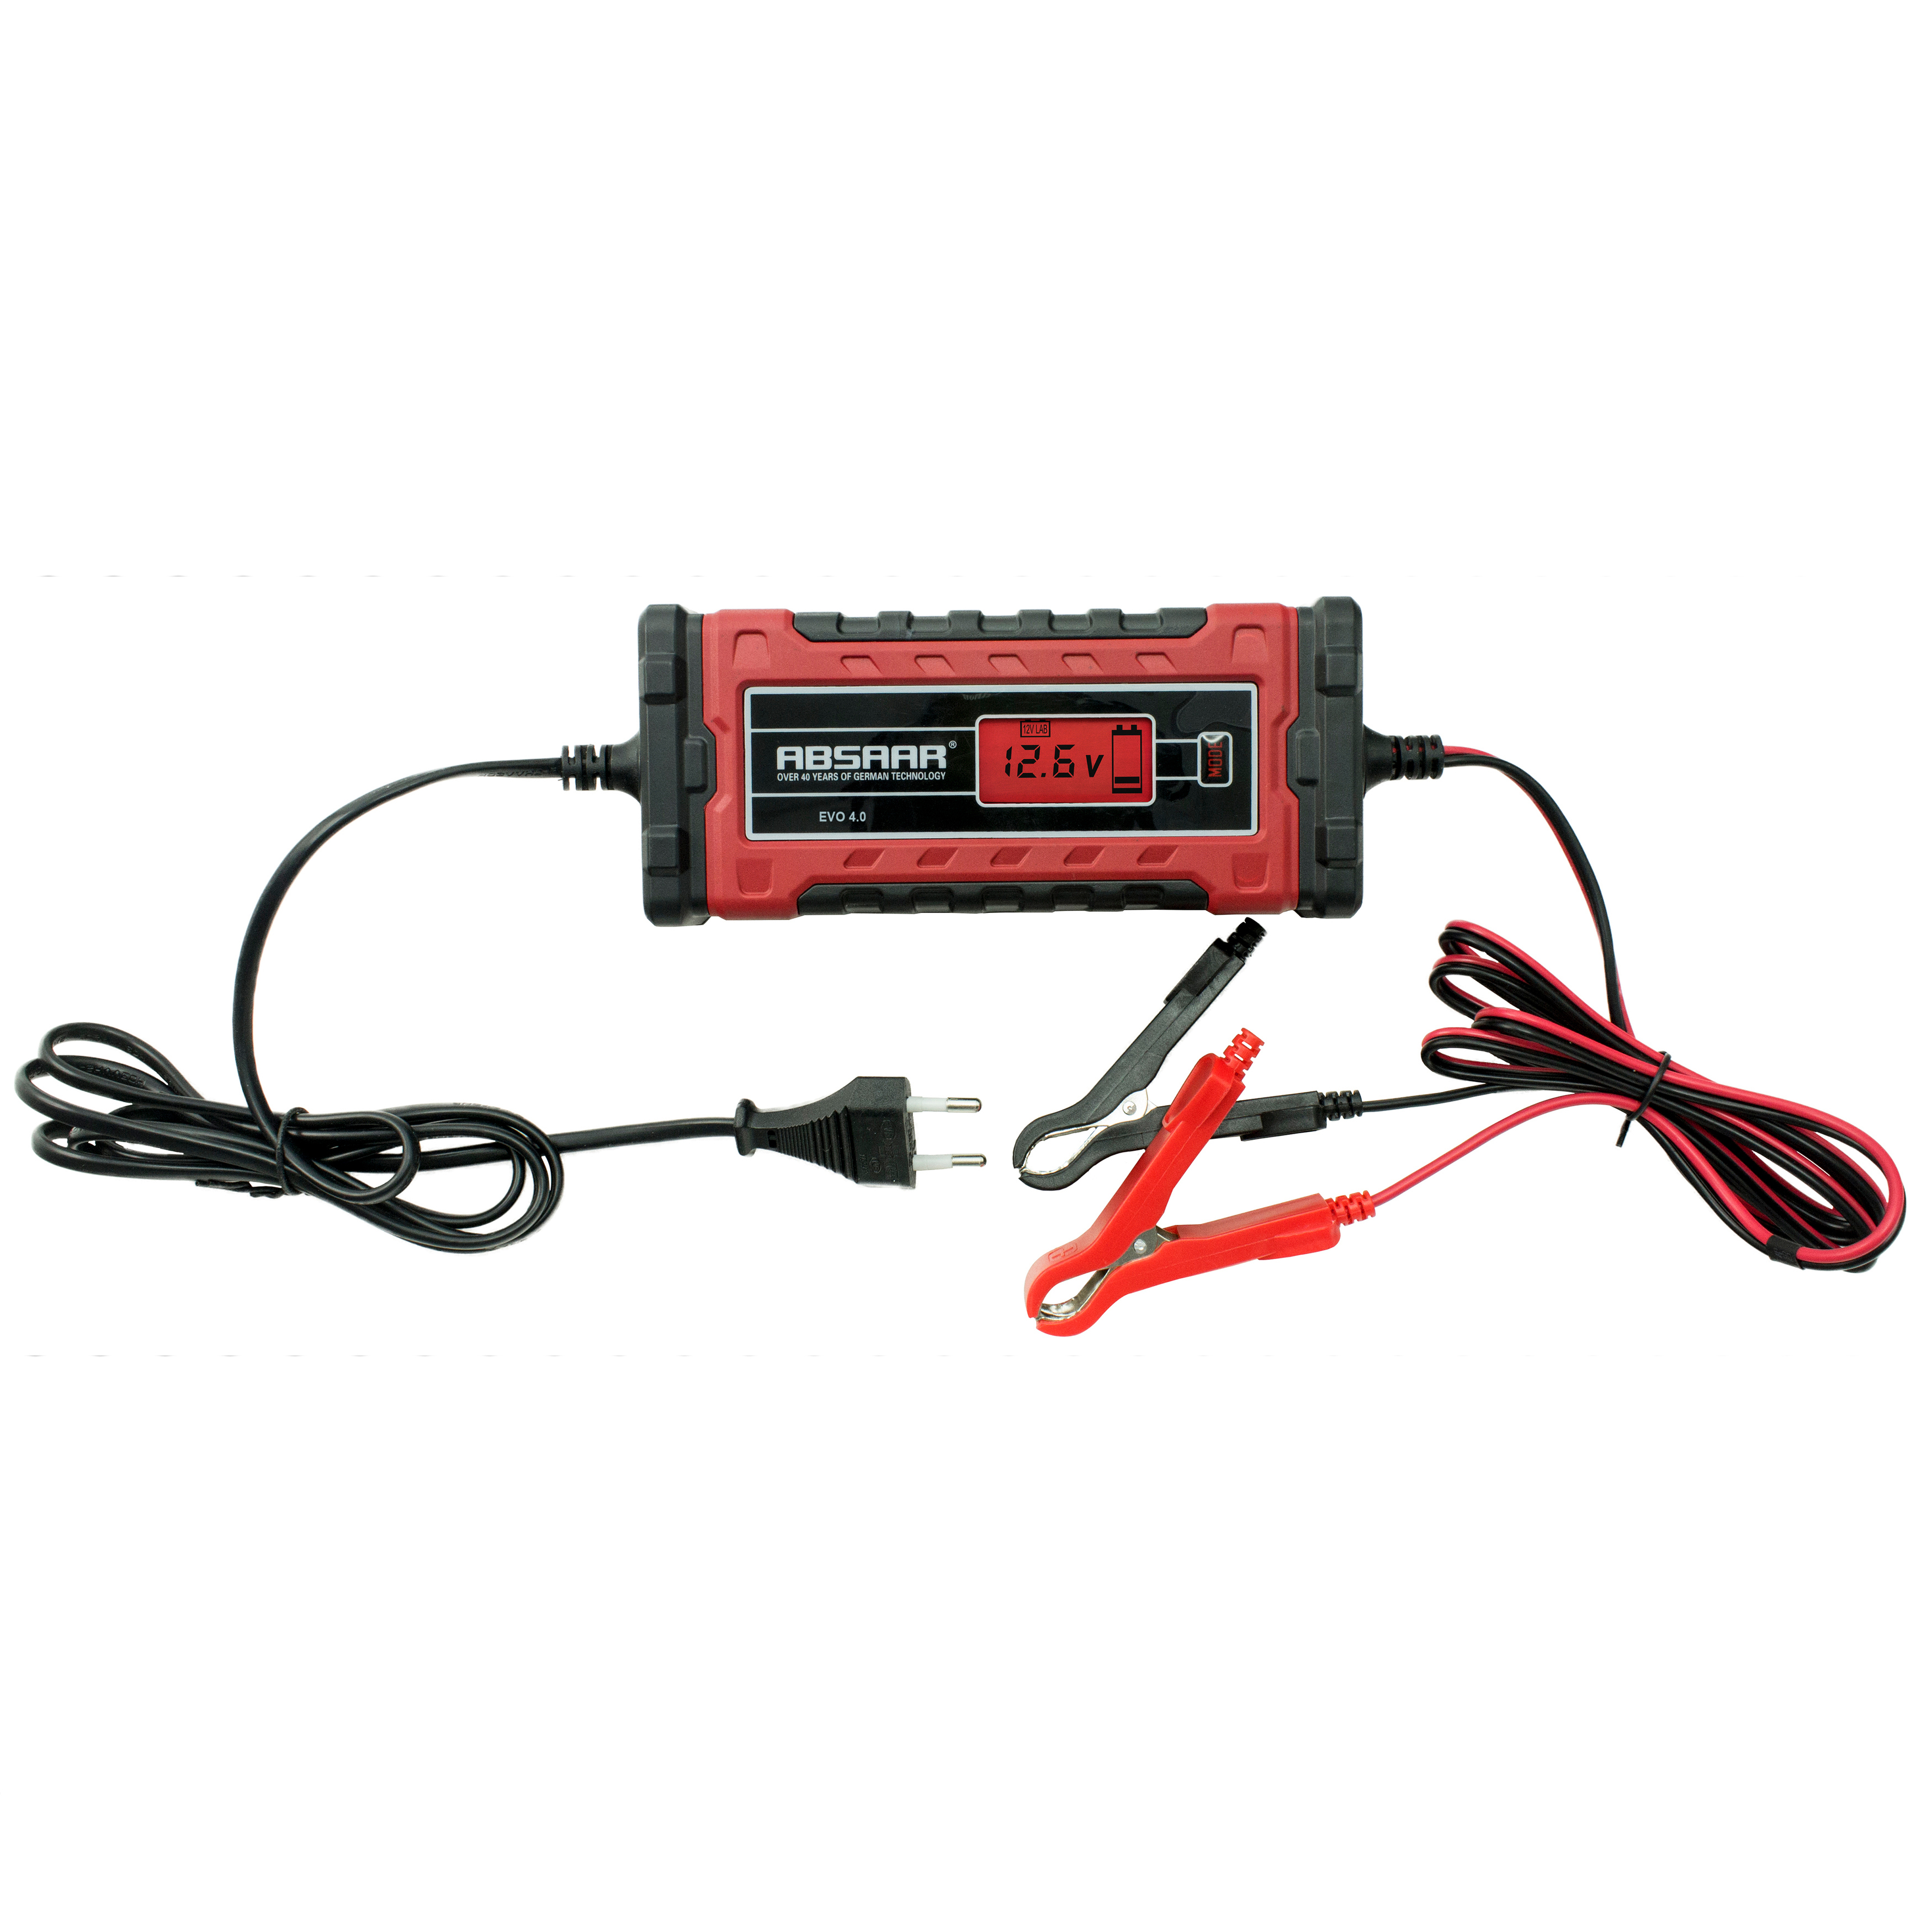 ABSAAR 158001 4.0 Rot/Schwarz Batterieladegerät, EVO